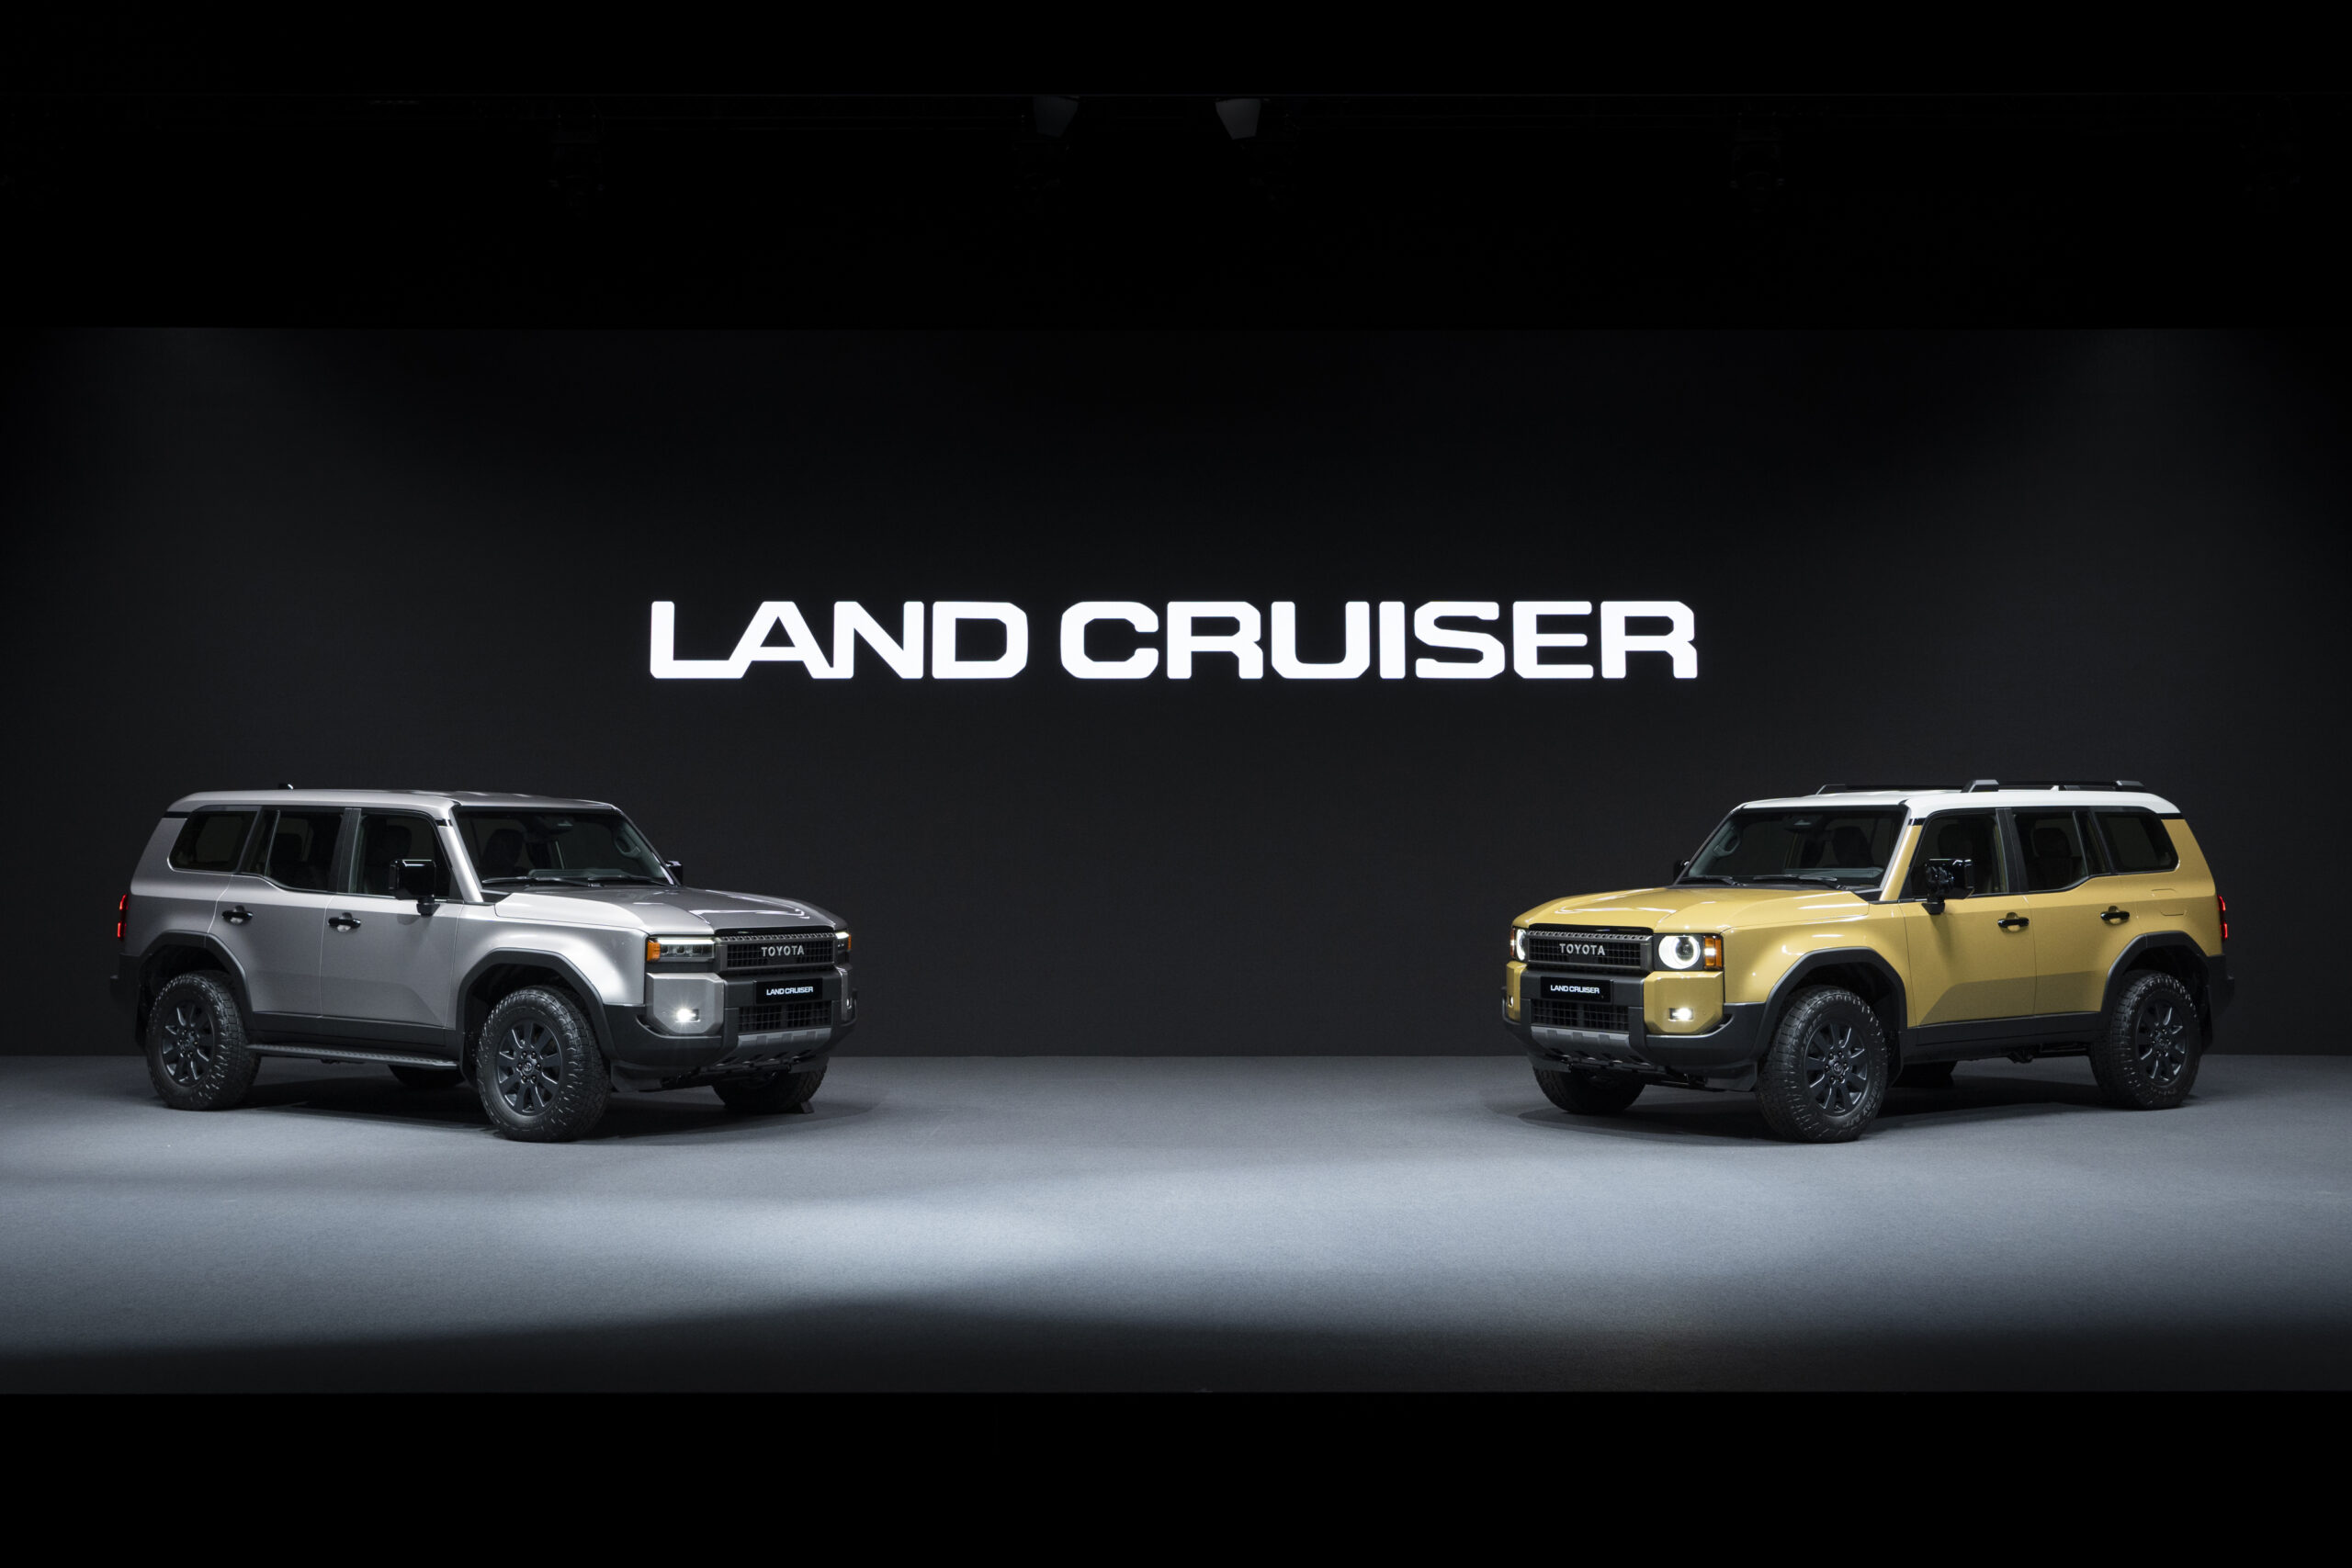 Land Cruiser series announced